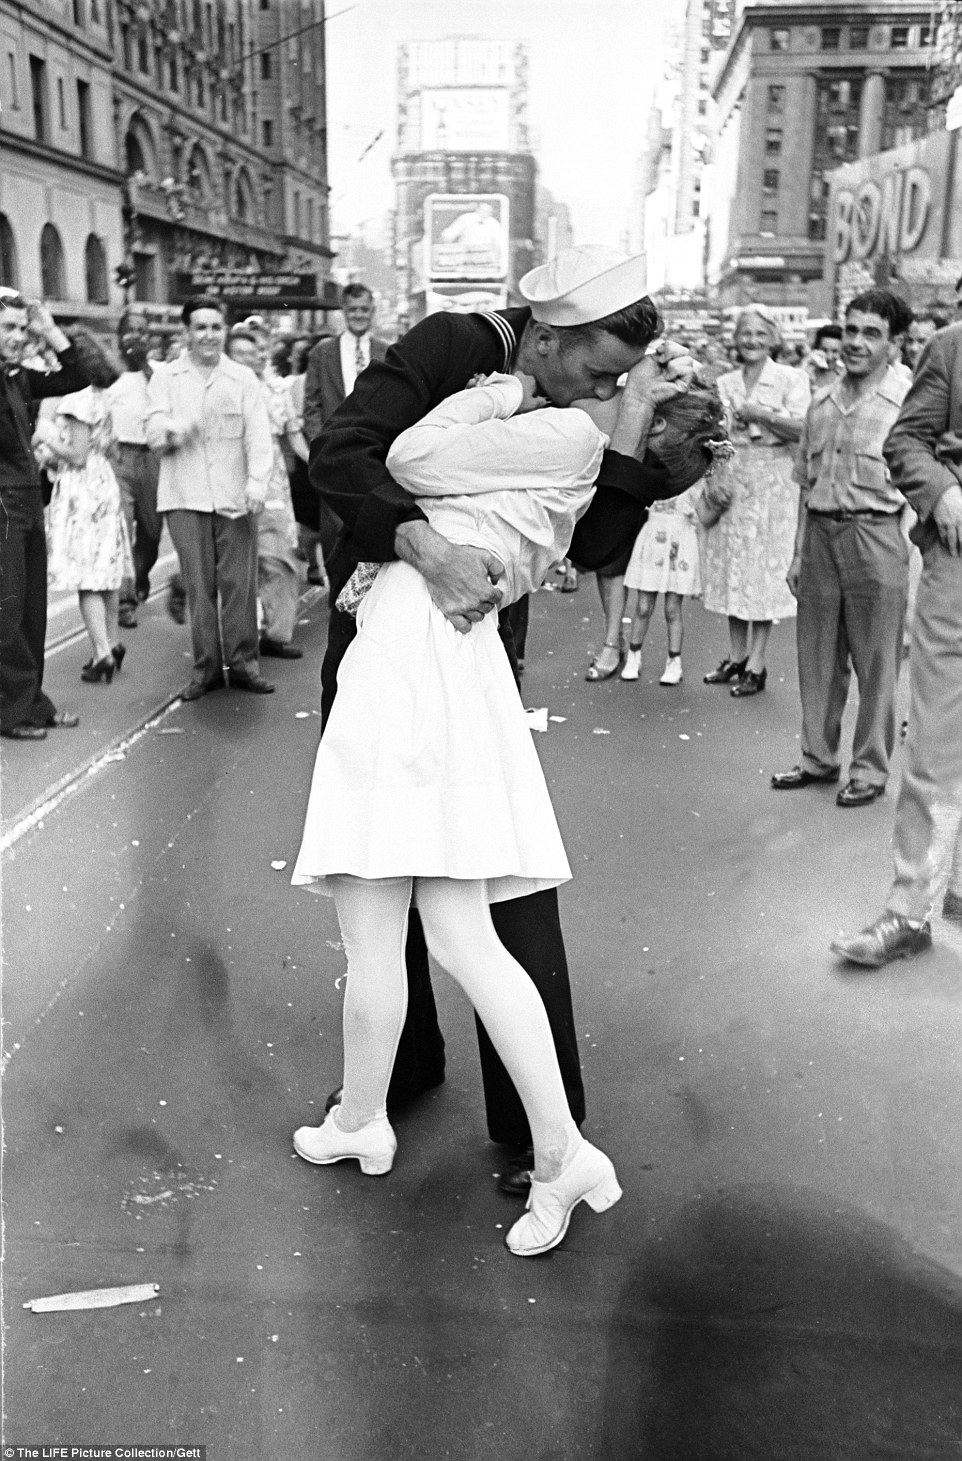 Ngày 14-8-1945, nhiếp ảnh Alfred Eisenstaedt đã chụp được bức ảnh để đời “Nụ hôn ở Quảng trường Thời đại”. Bức ảnh ghi lại cảnh một thủy thủ và nữ y tá trao nhau nụ hôn say đắm với vòng ôm ấm áp trong thời khắc ăn mừng phát xít Nhật đầu hàng quân Đồng minh ở Quảng trường Thời đại, New York, Mỹ. Tuy nhiên, cho tới nay, 2 nhân vật chính trong bức ảnh vẫn còn là điều bí ẩn.